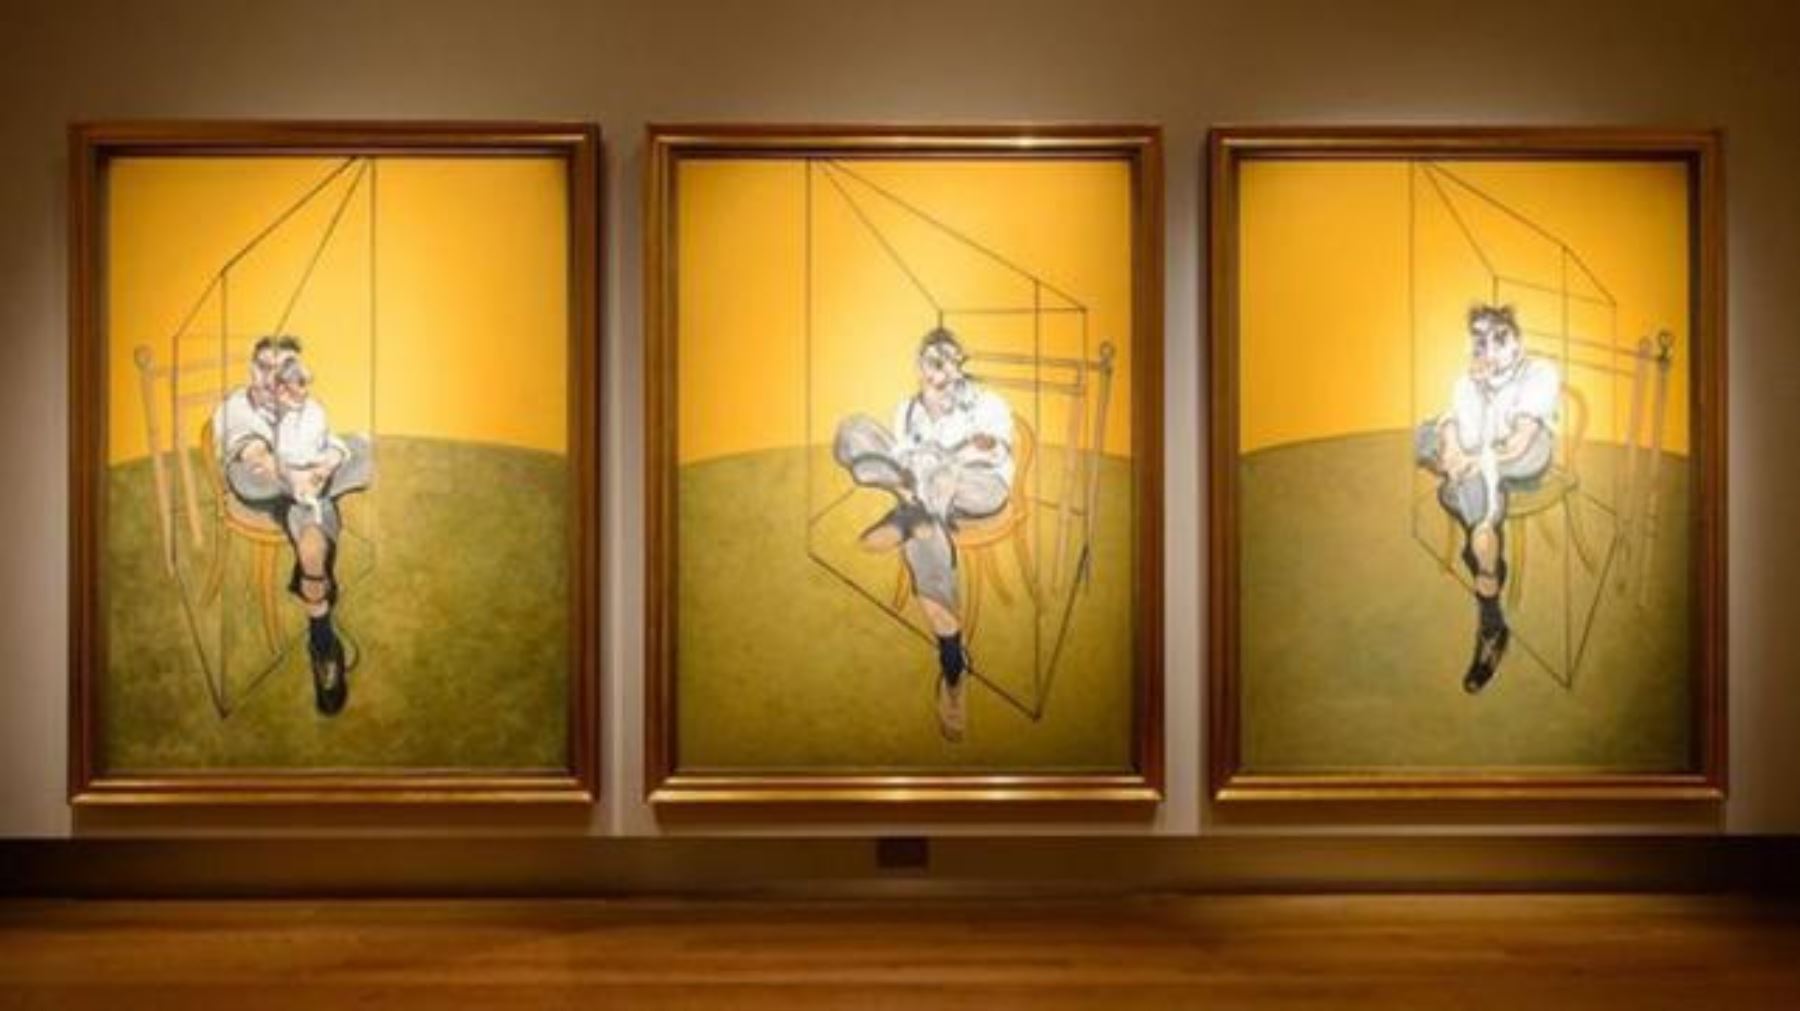 3- Francis Bacon, "Tres estudios de Lucian Freud", tríptico vendido por 142,4 millones de dólares el 12 de noviembre de 2013 en Christie